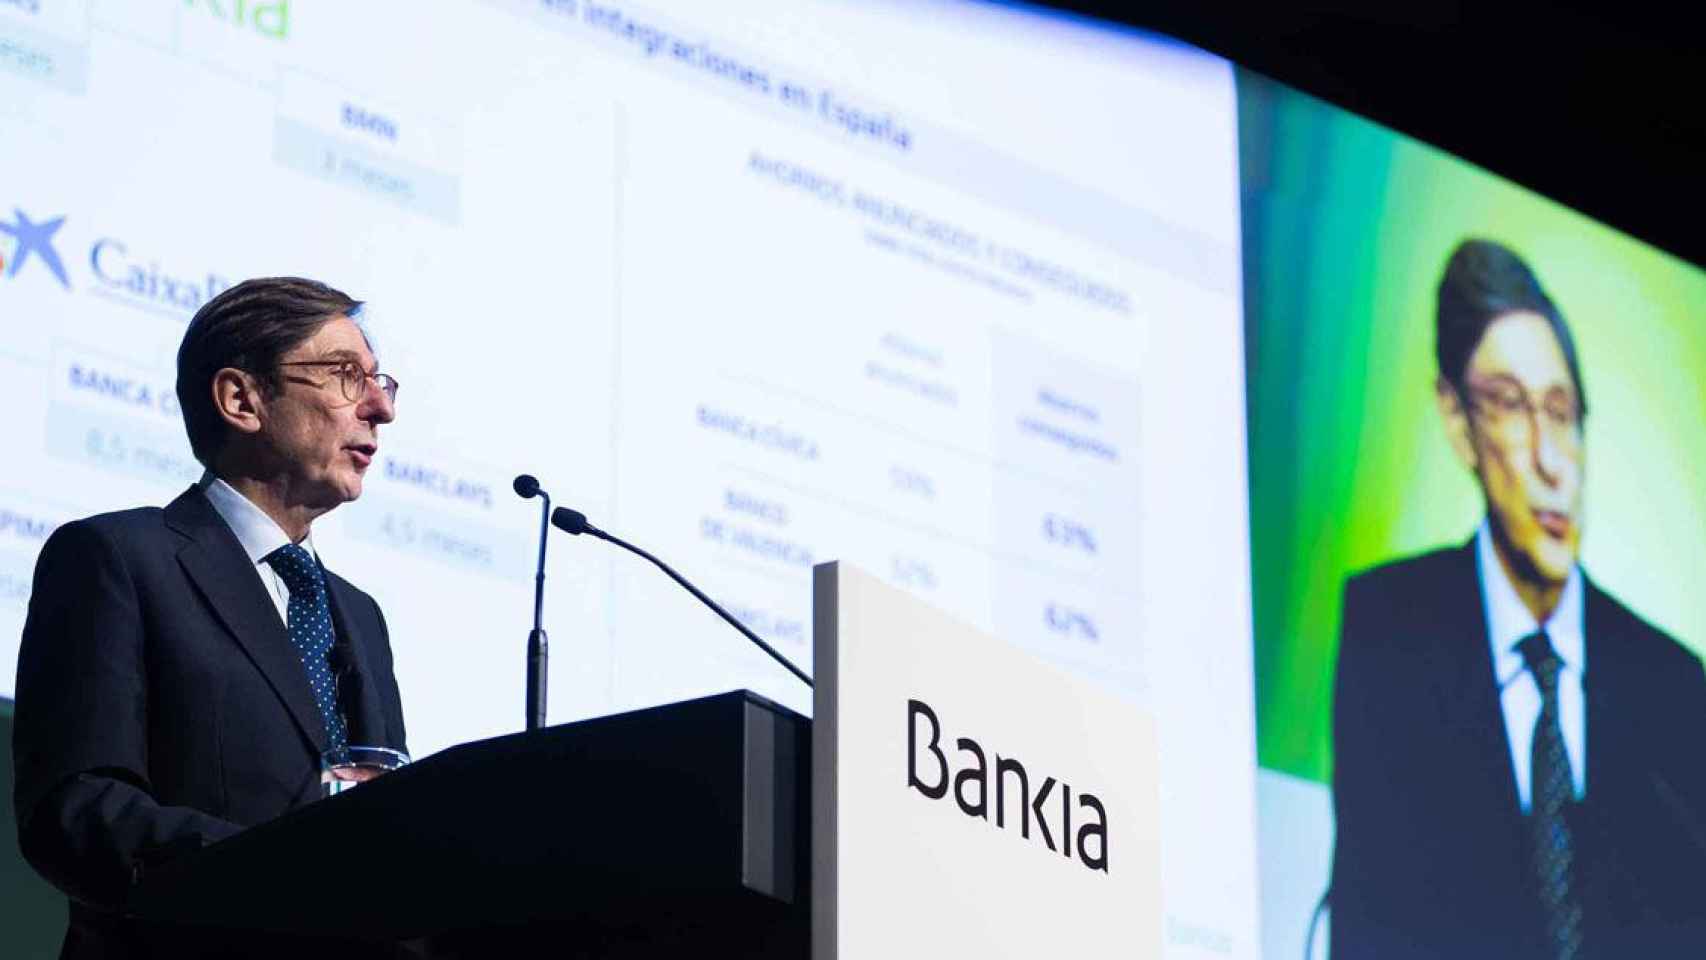 El presidente de Bankia, José Ignacio Goirigolzarri, en su intervención en la última junta general de accionistas del banco / BANKIA